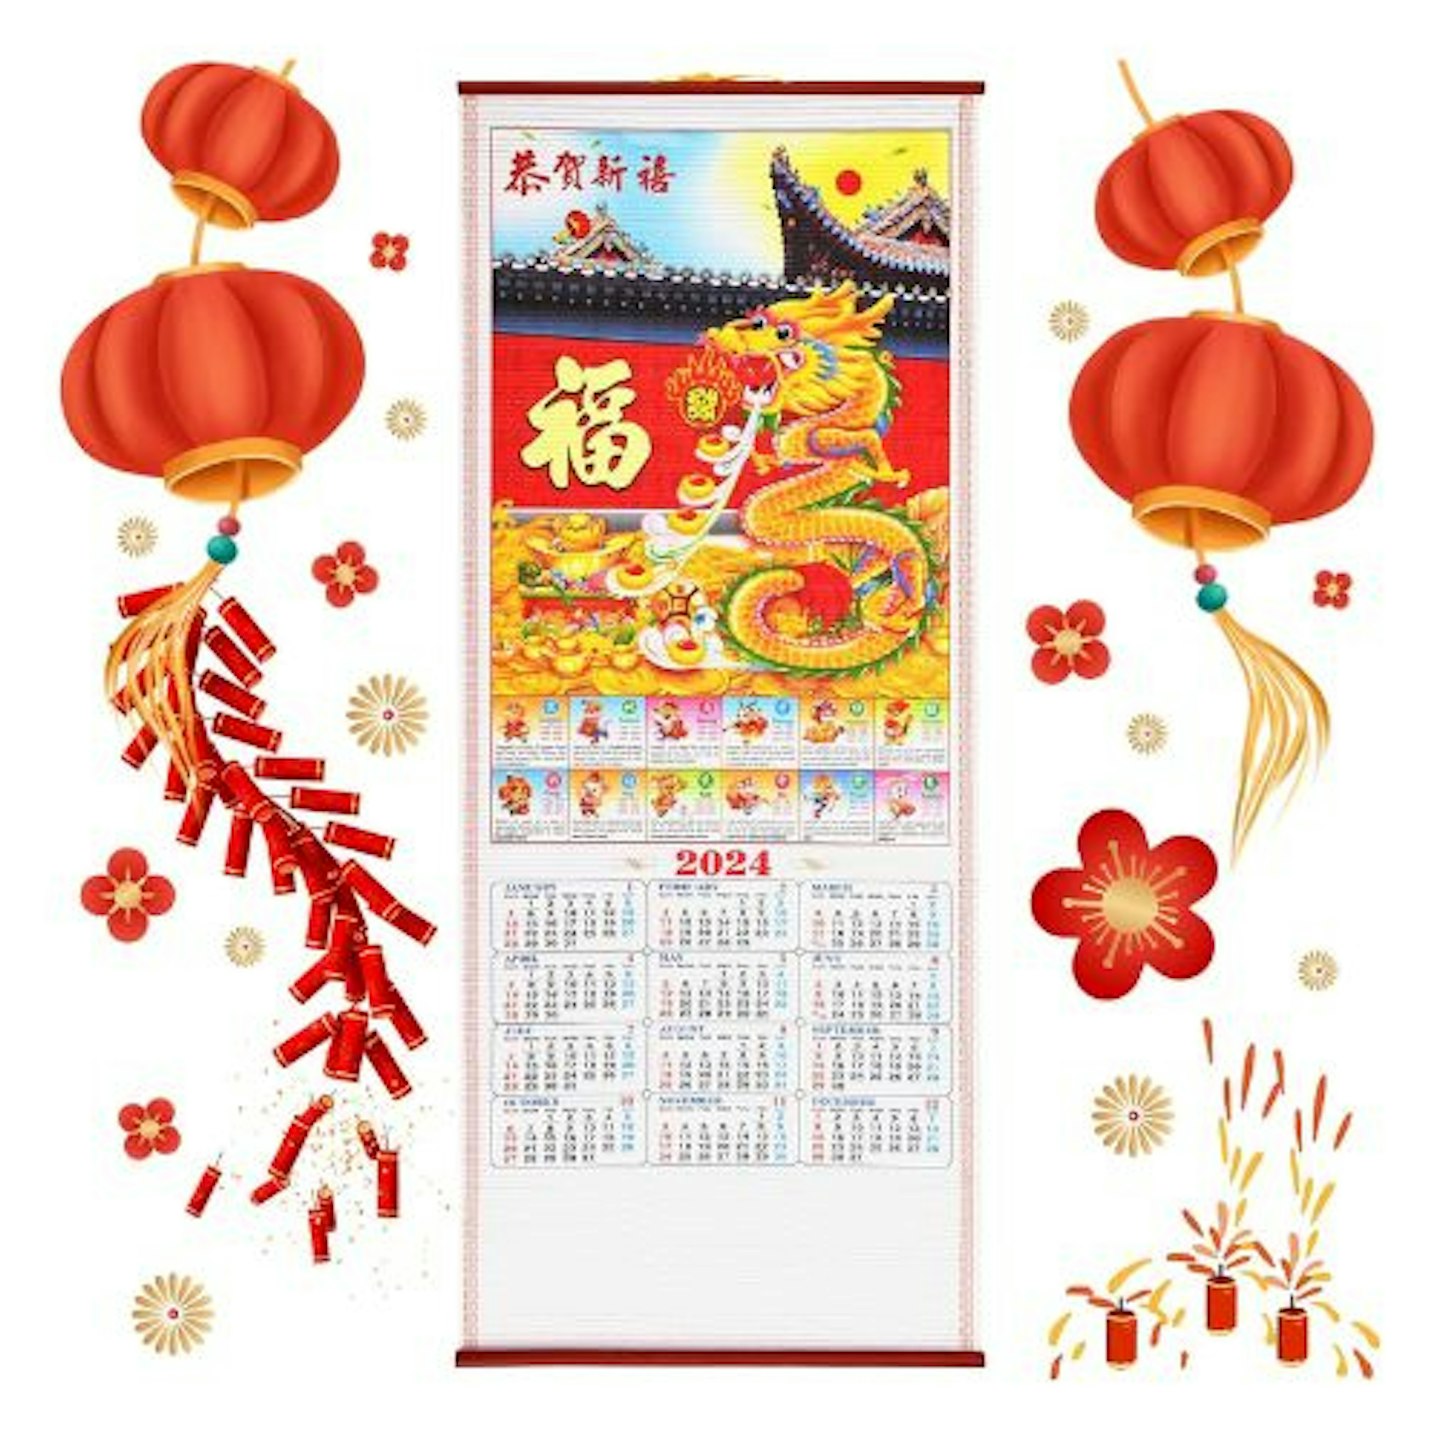  Chinese Lunar New Year Wall Calendar Scroll, 2024 Dragon Zodiac Calendar